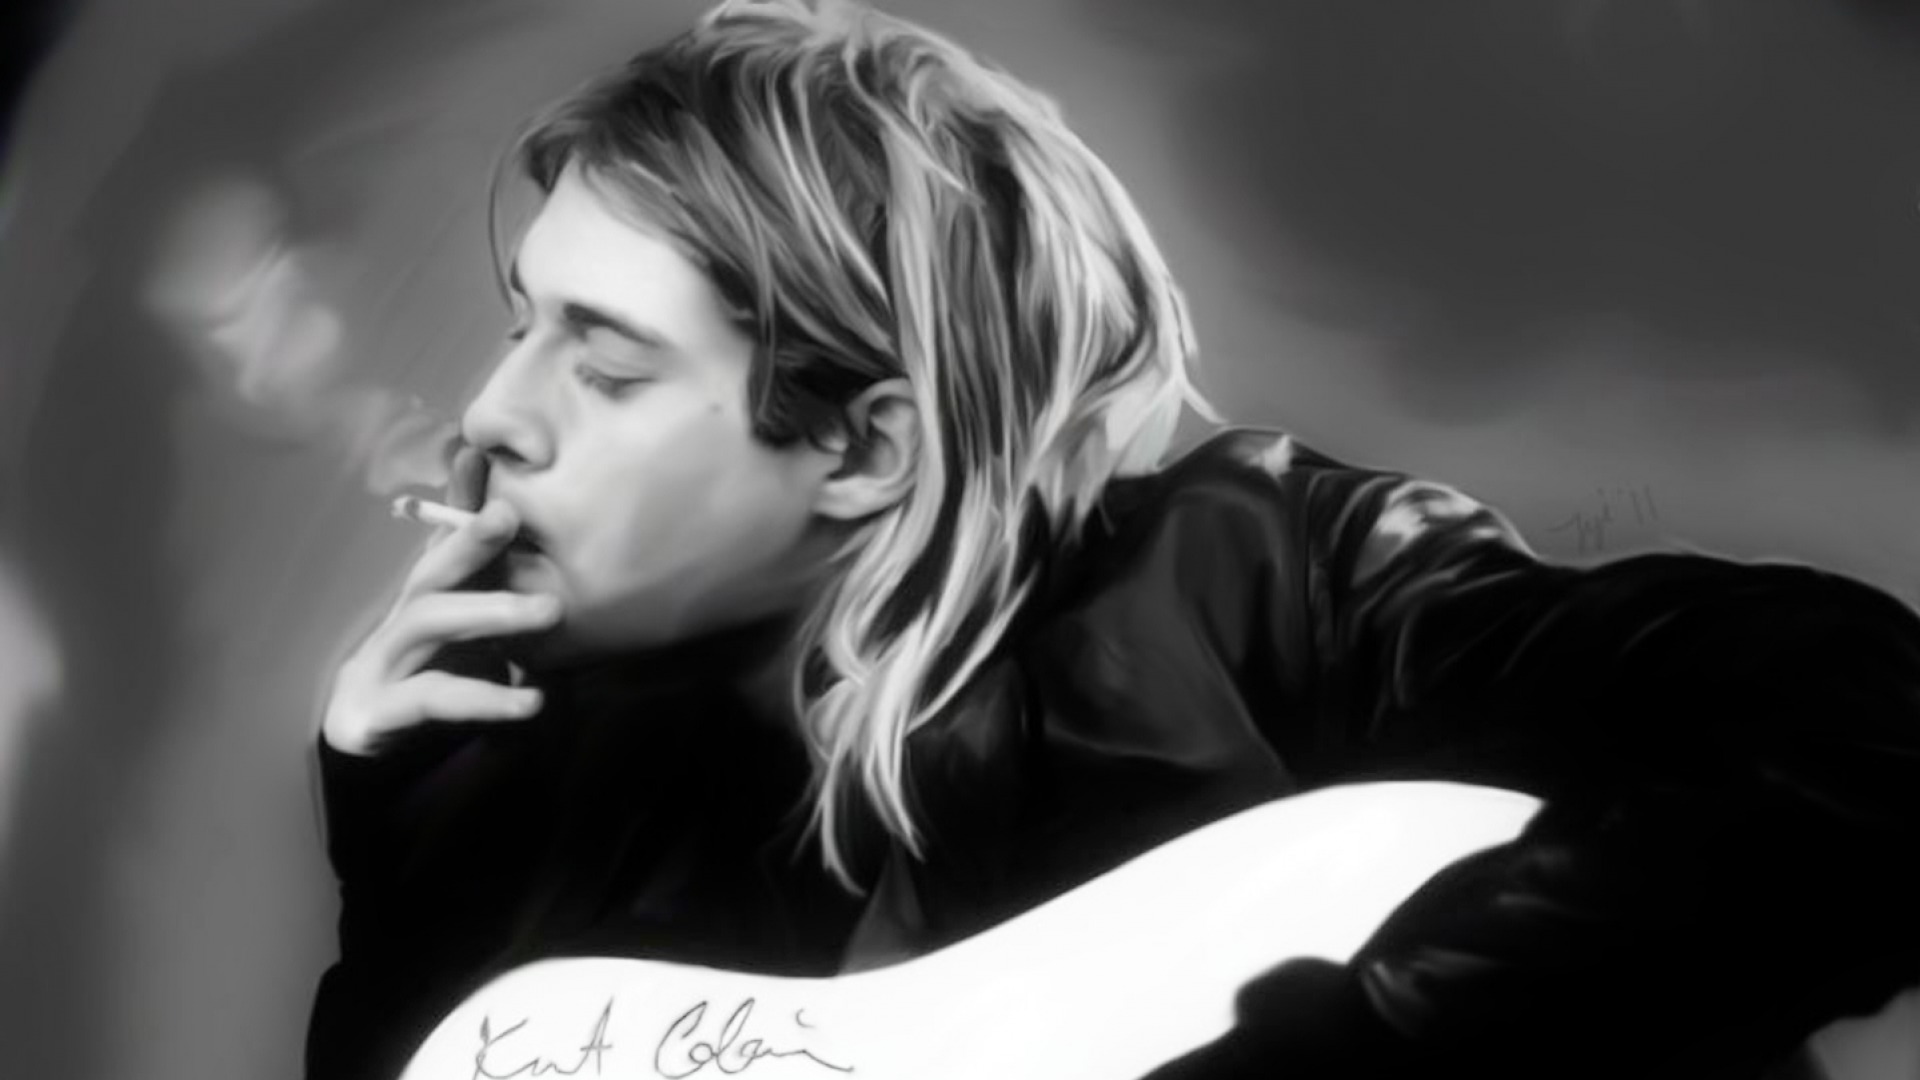 Kurt Cobain Wallpapers